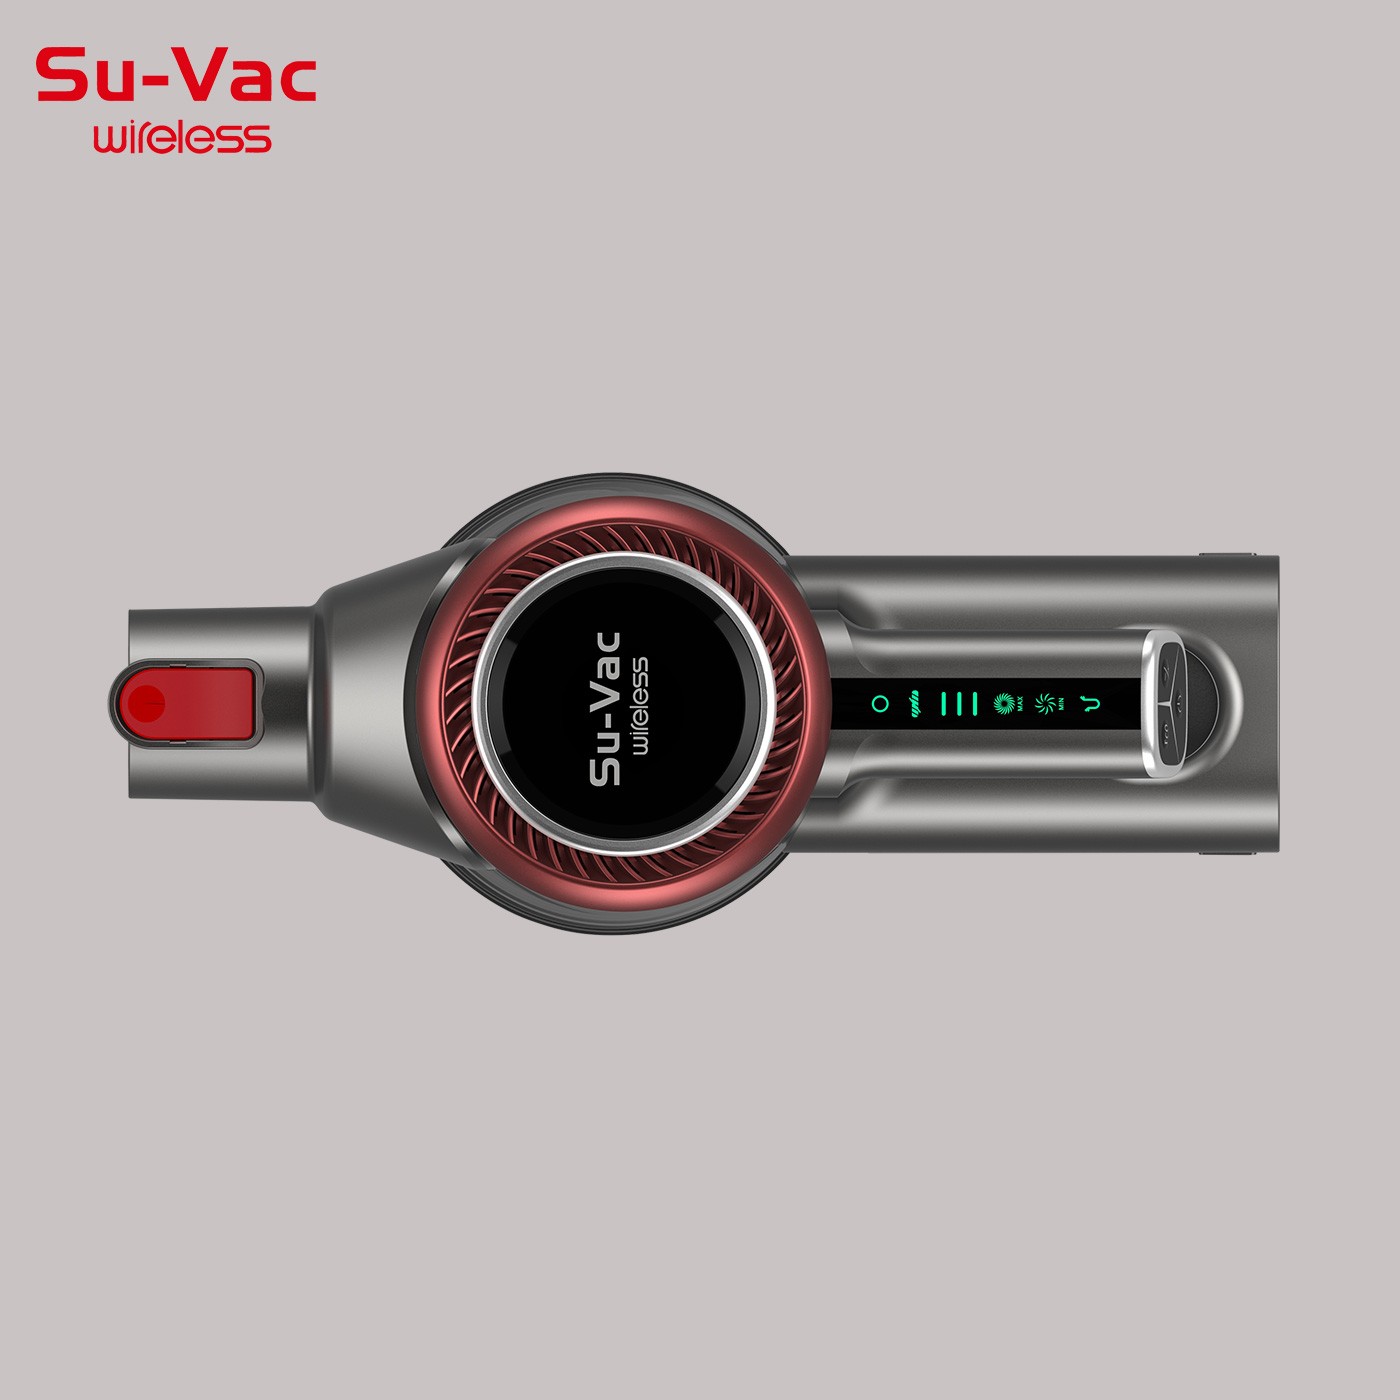 SUVAC DV-8211 SMART CORDLESS STICK VACUUM CLEANER